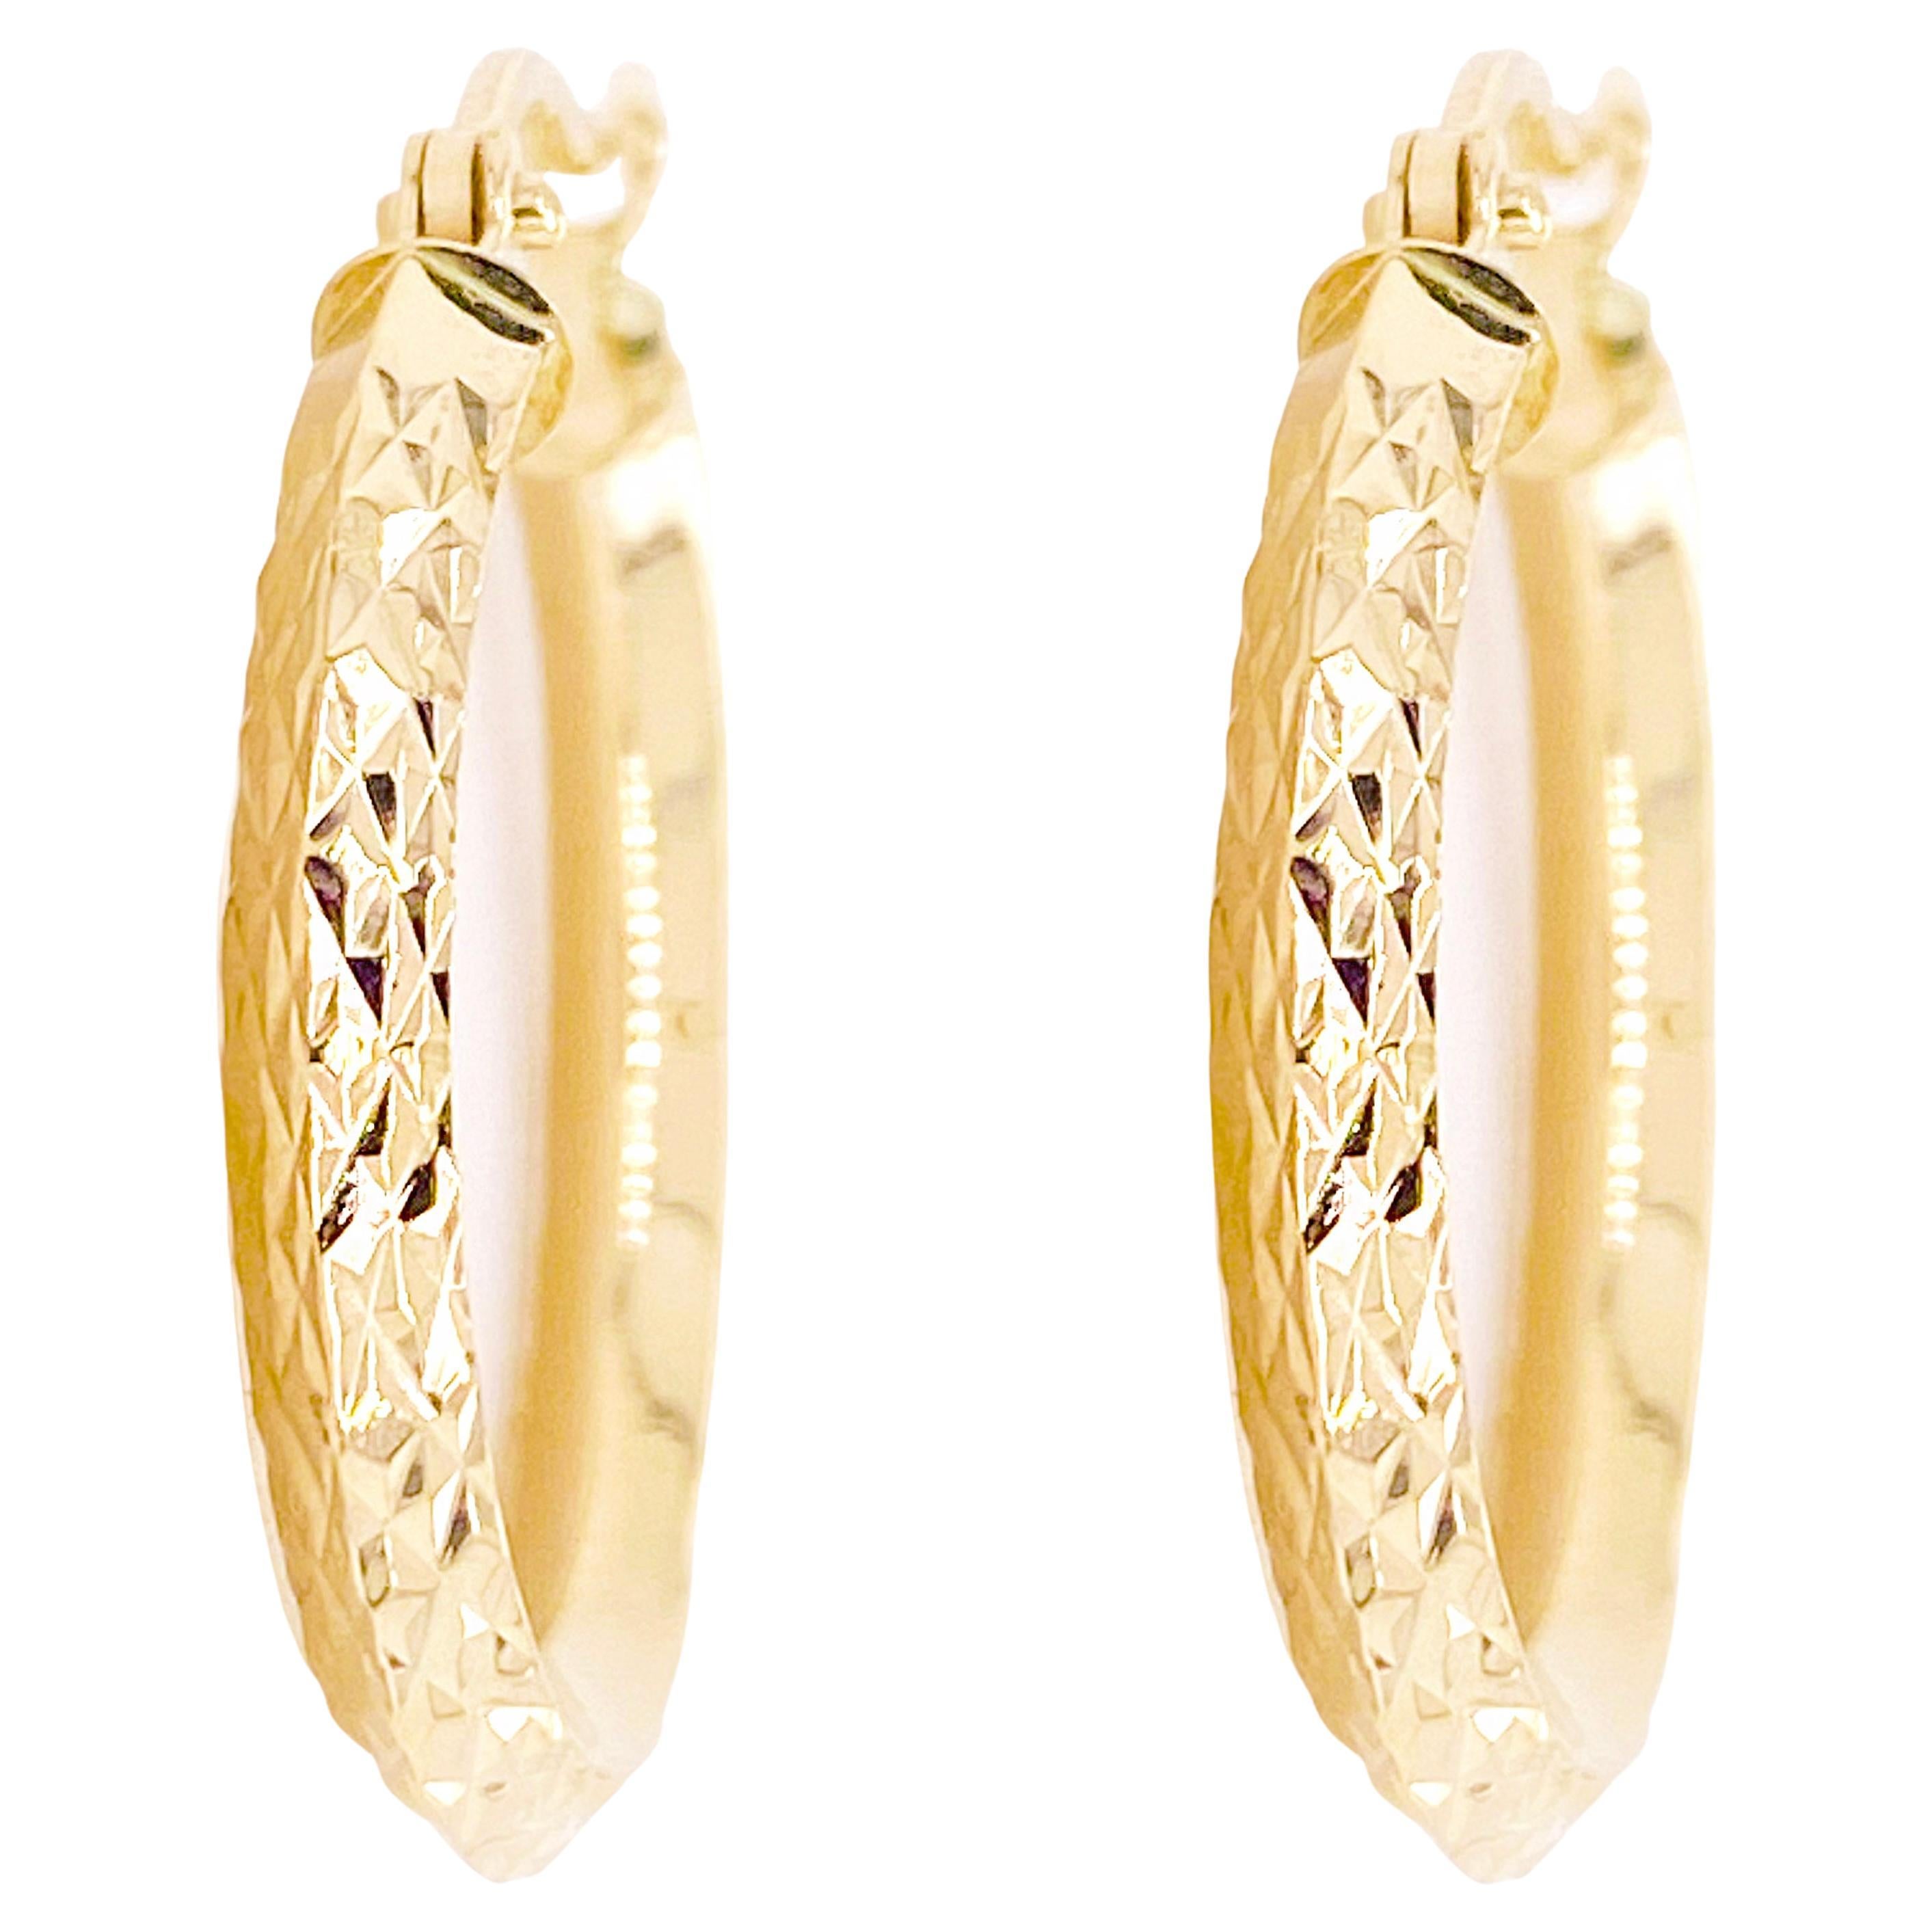 Hoops Earrings Diamond Cut 14 Karat Yellow Gold Sparkly Loop Earrings